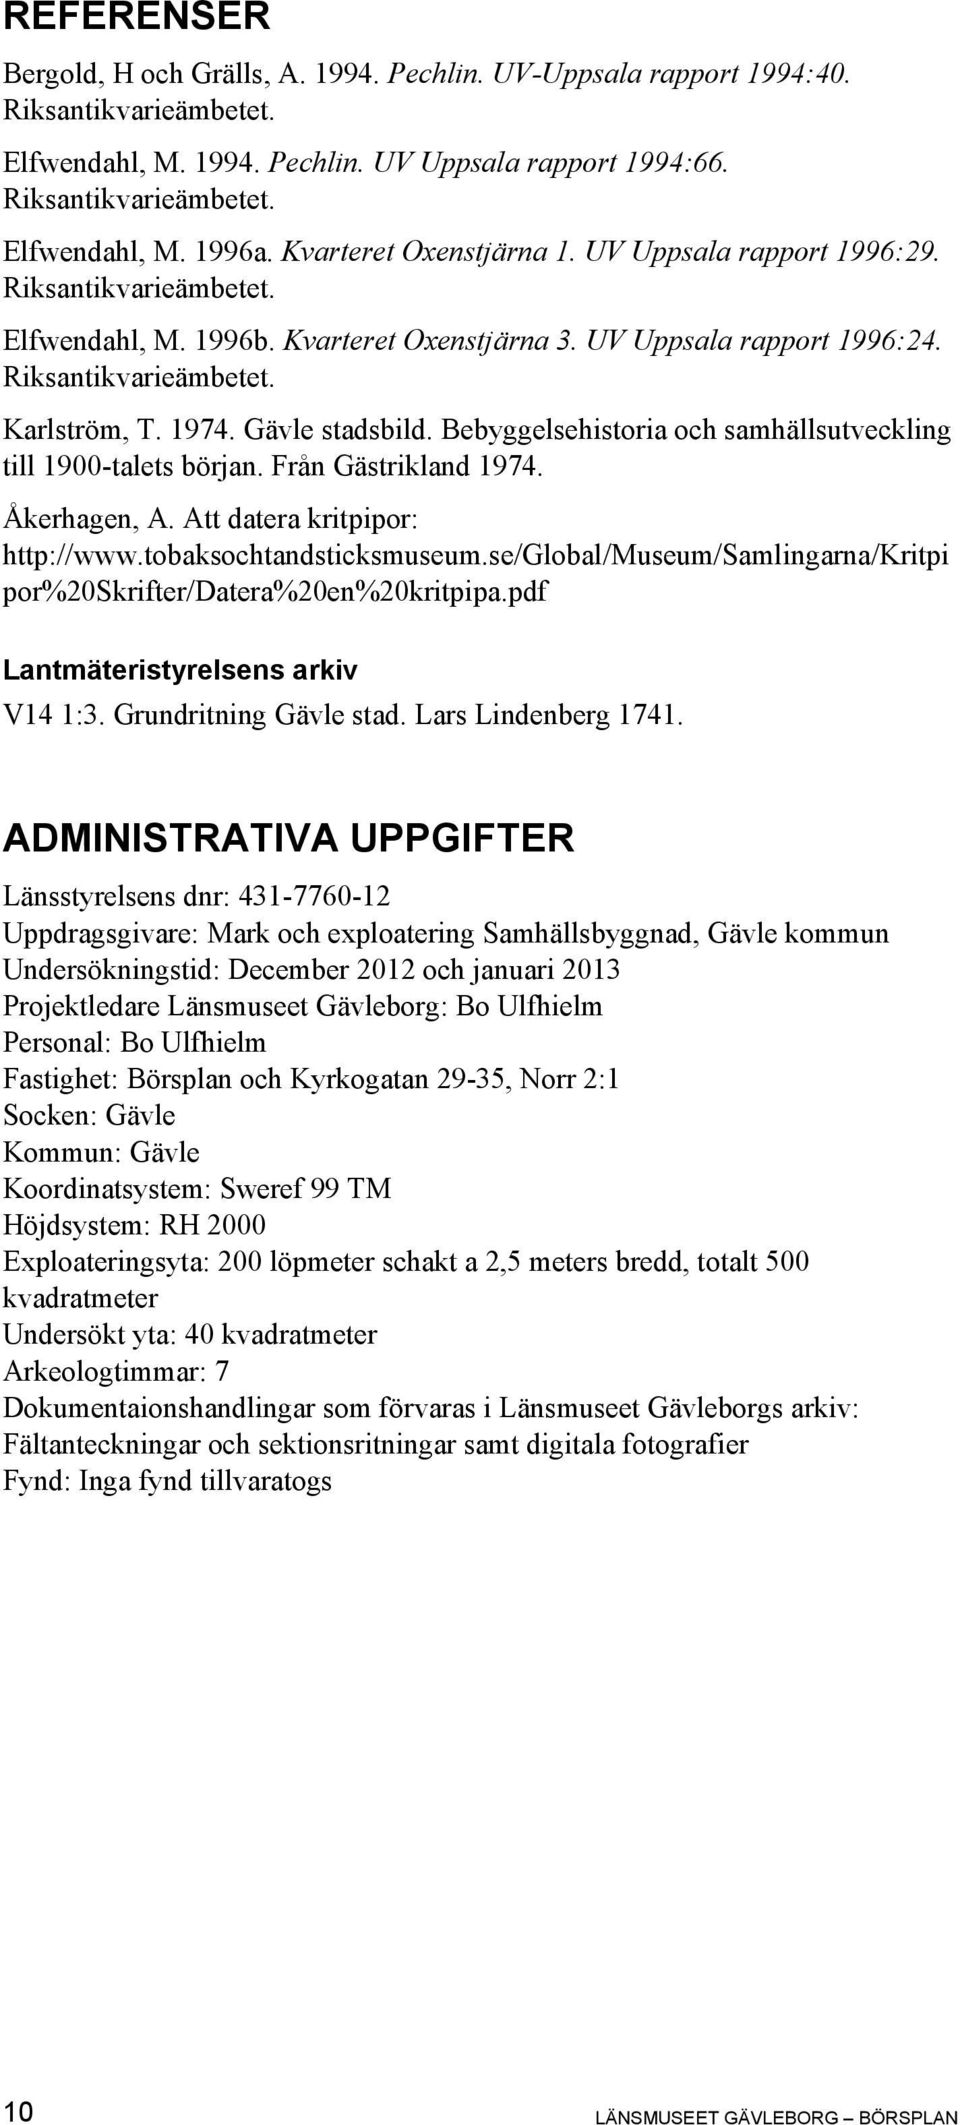 Gävle stadsbild. Bebyggelsehistoria och samhällsutveckling till 1900-talets början. Från Gästrikland 1974. Åkerhagen, A. Att datera kritpipor: http://www.tobaksochtandsticksmuseum.